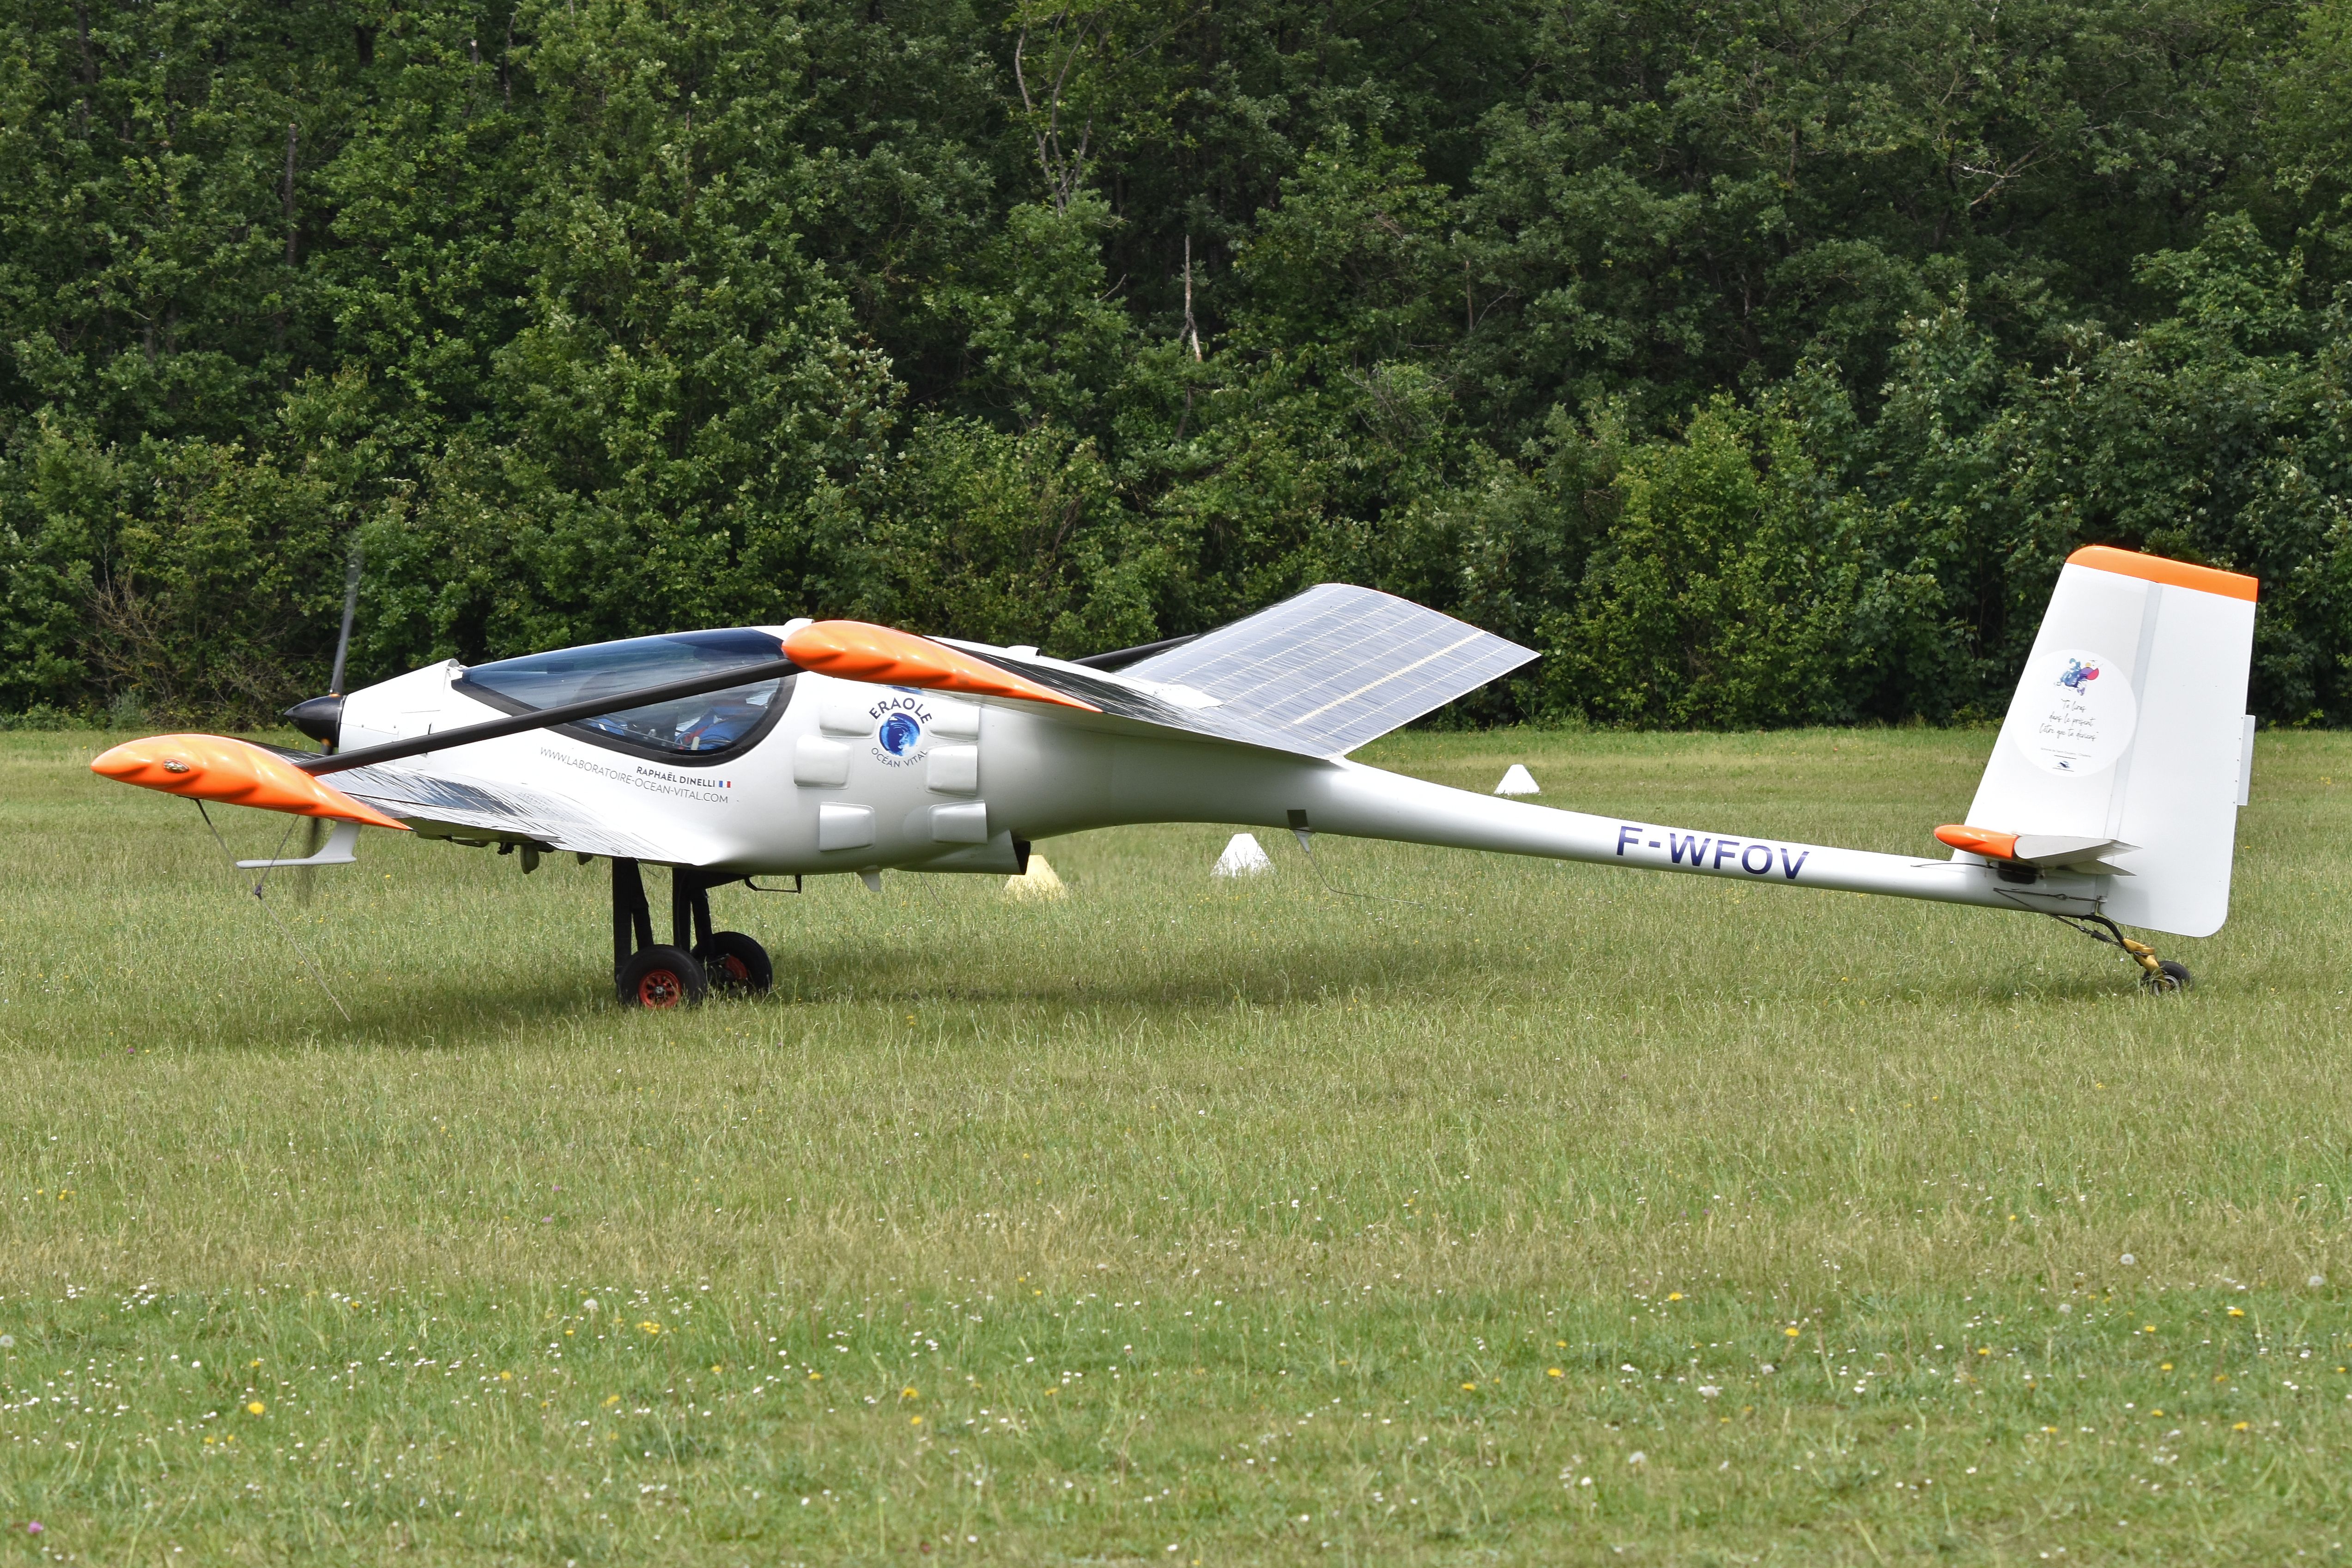 Ocean Vital Eraole ‘F-WFOV’ Hydrogen-hybrid aircraft